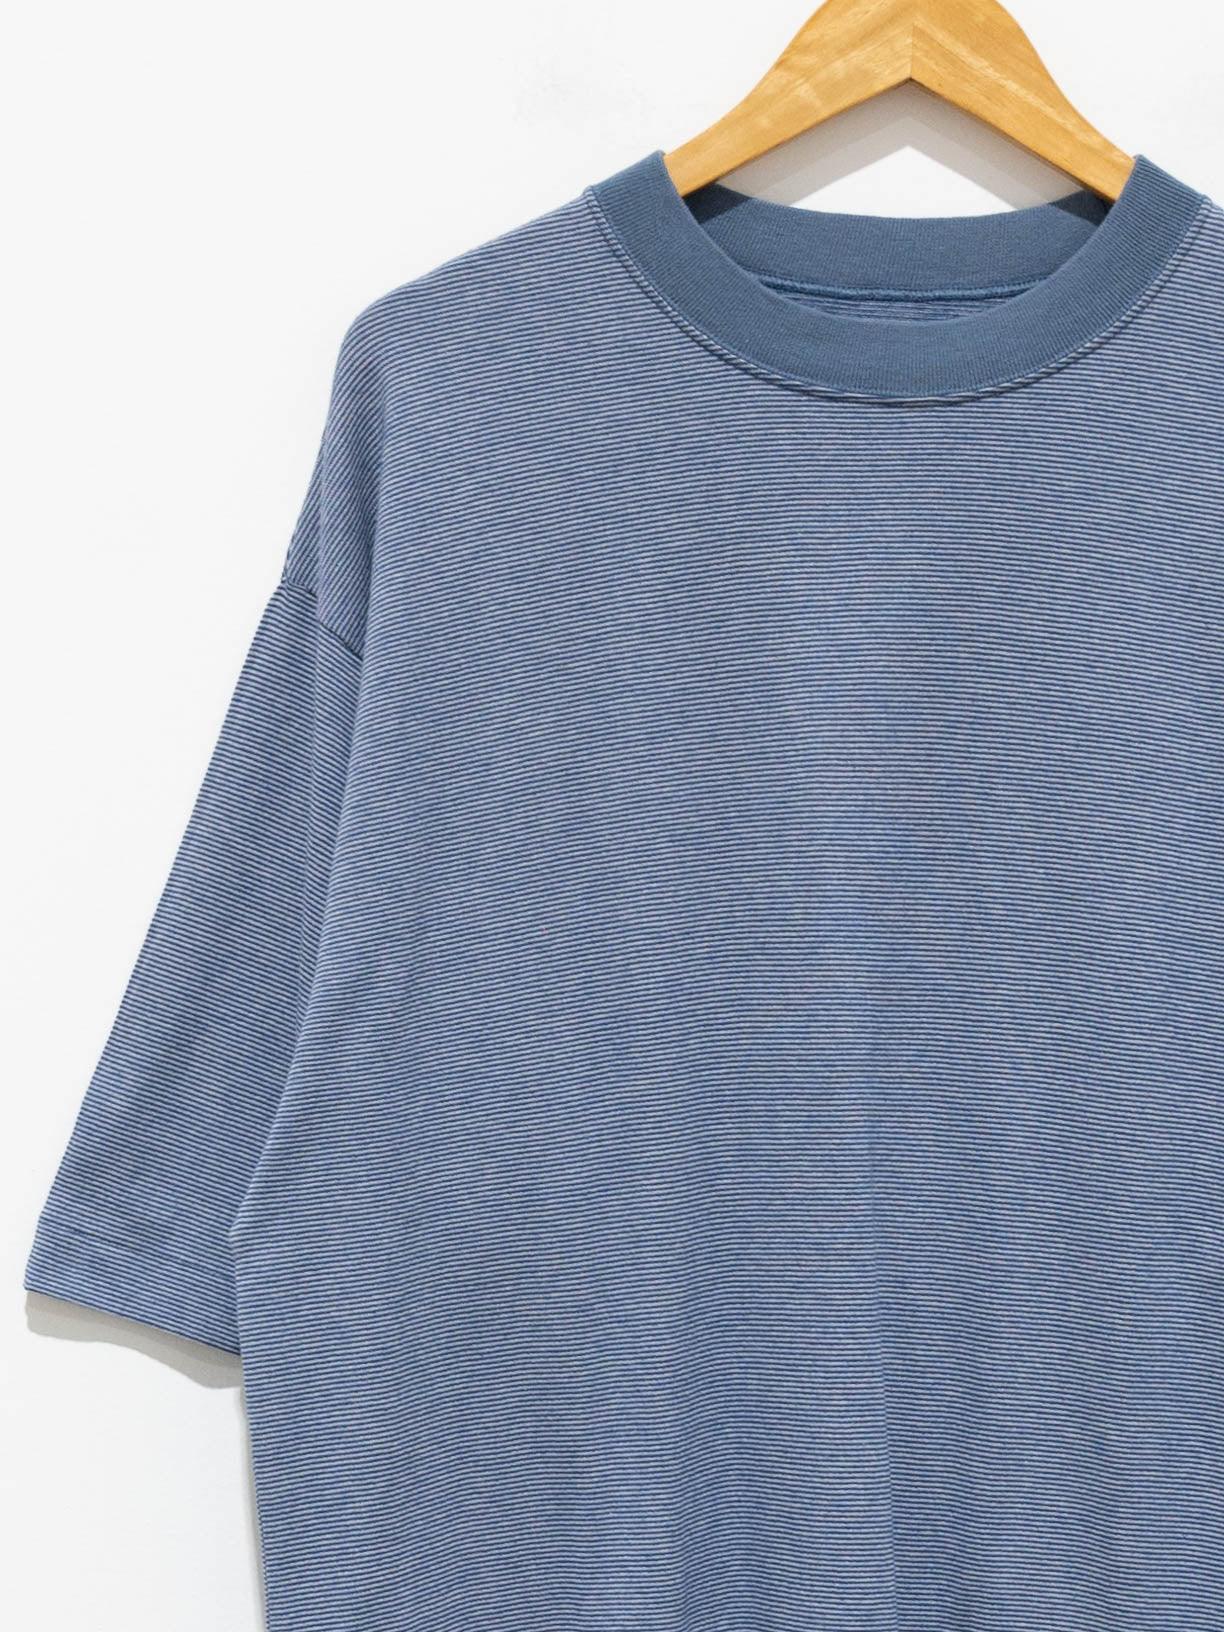 Namu Shop - Phlannel Cotton Linen Links Border T-Shirt - Blue